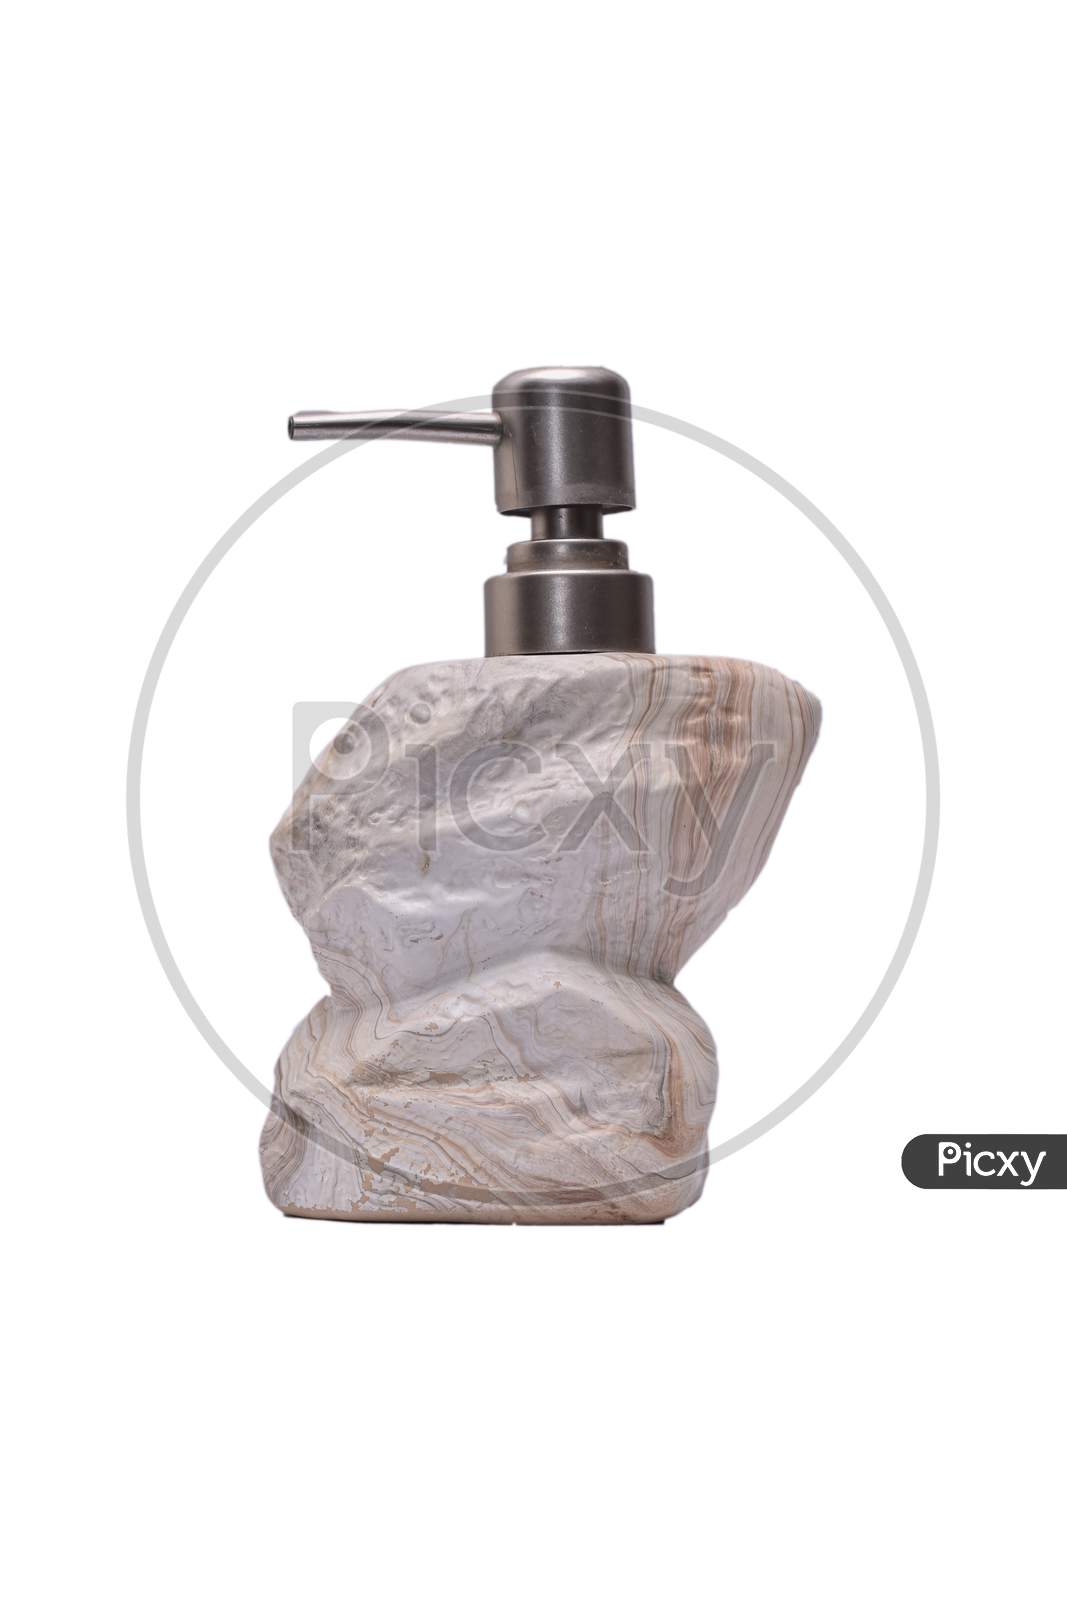 Creative Ceraminc Antique Stone Liquid Or Hand Soap Dispenser